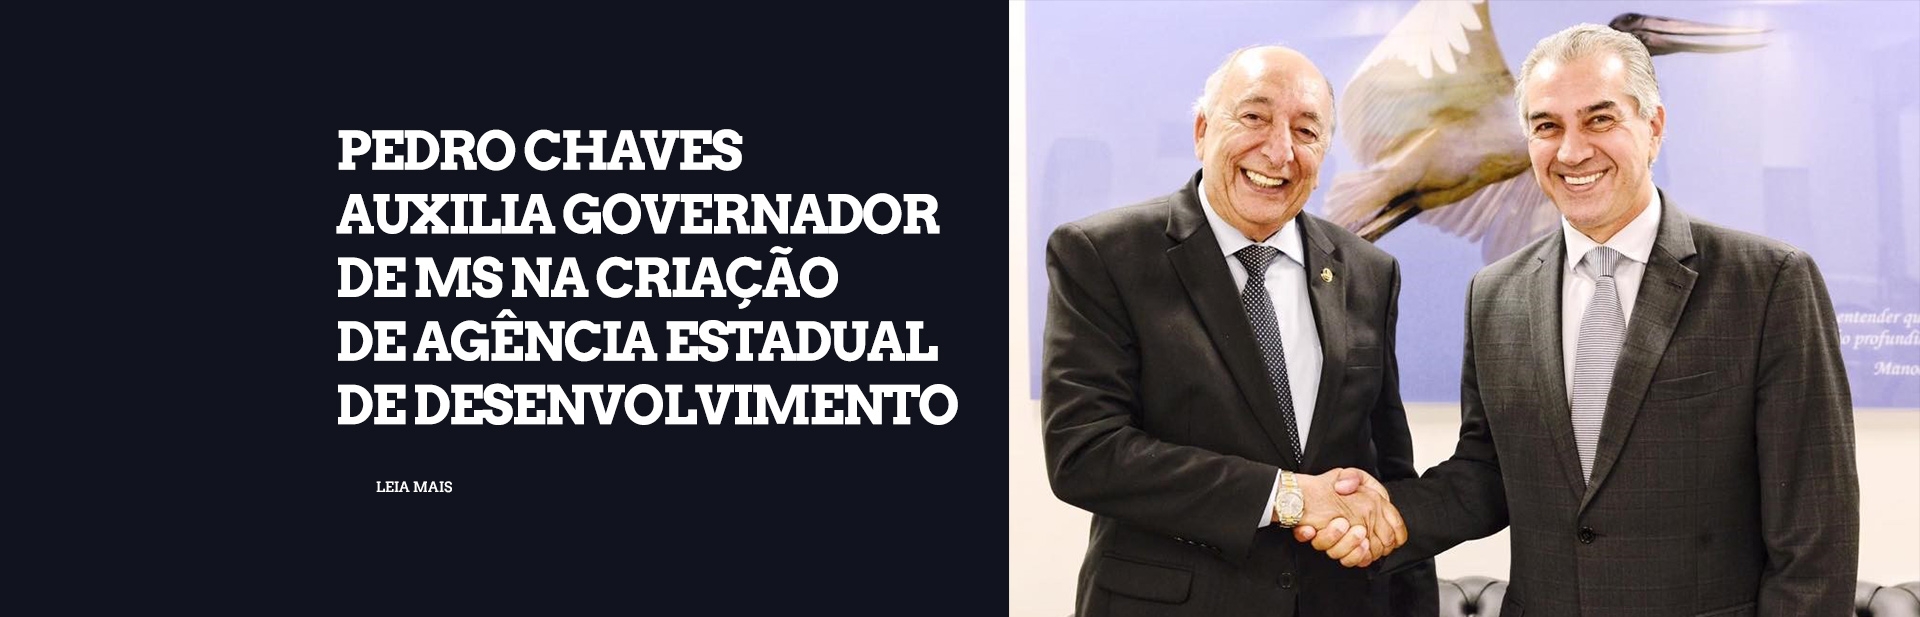 Pedro Chaves auxilia governador de MS na criação de Agência Estadual de Desenvolvimento